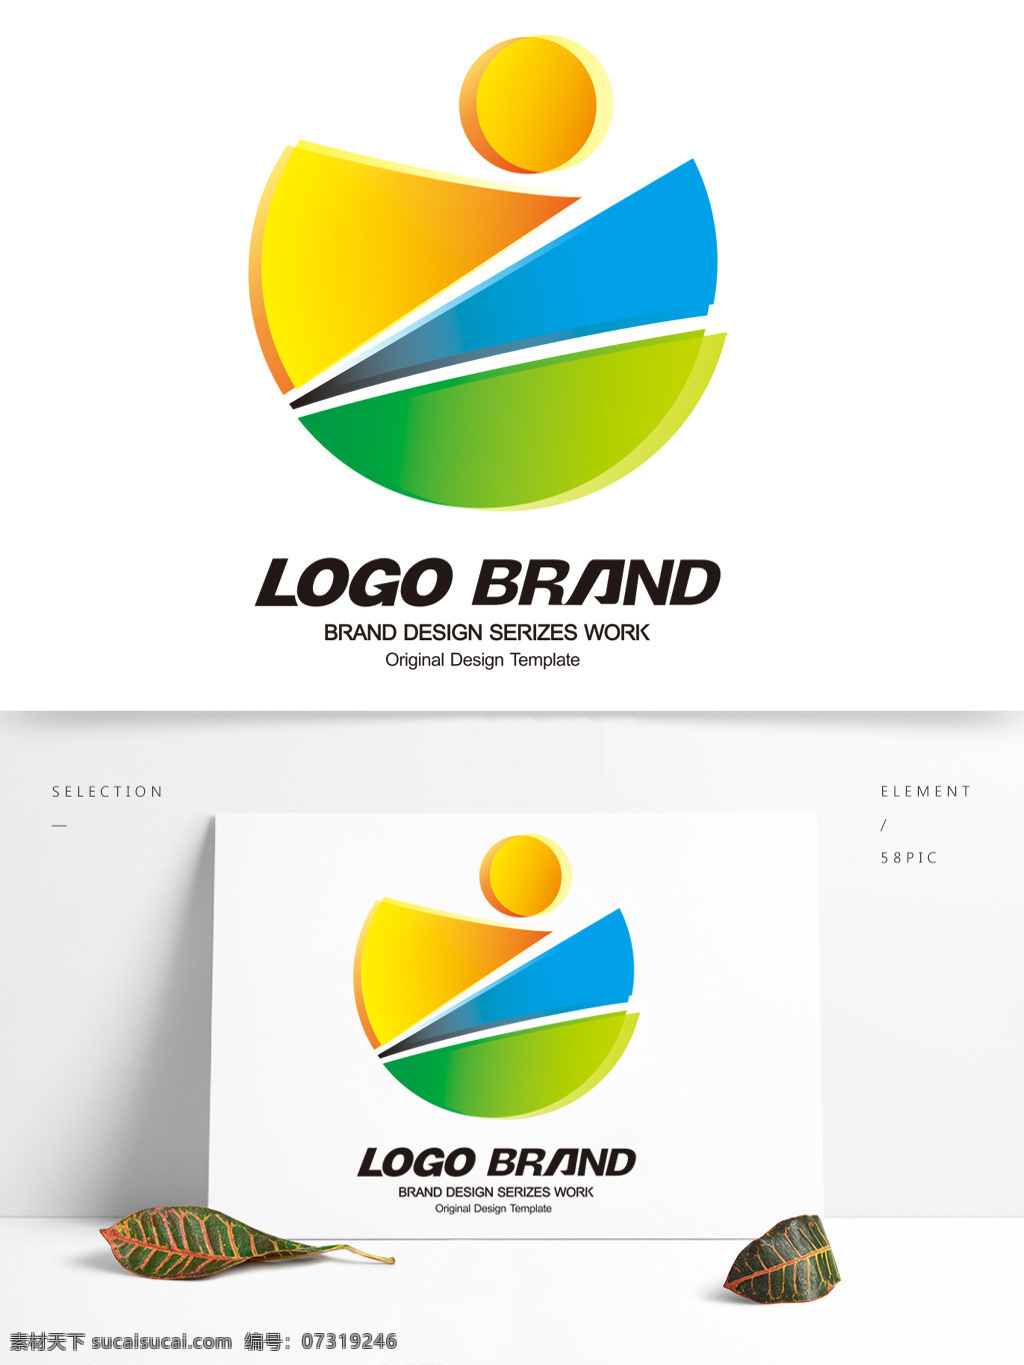 创意 矢量 几何图形 logo 公司 标志设计 d 字母 地球 标志 公司标志设计 企业 会徽标志设计 企业标志设计